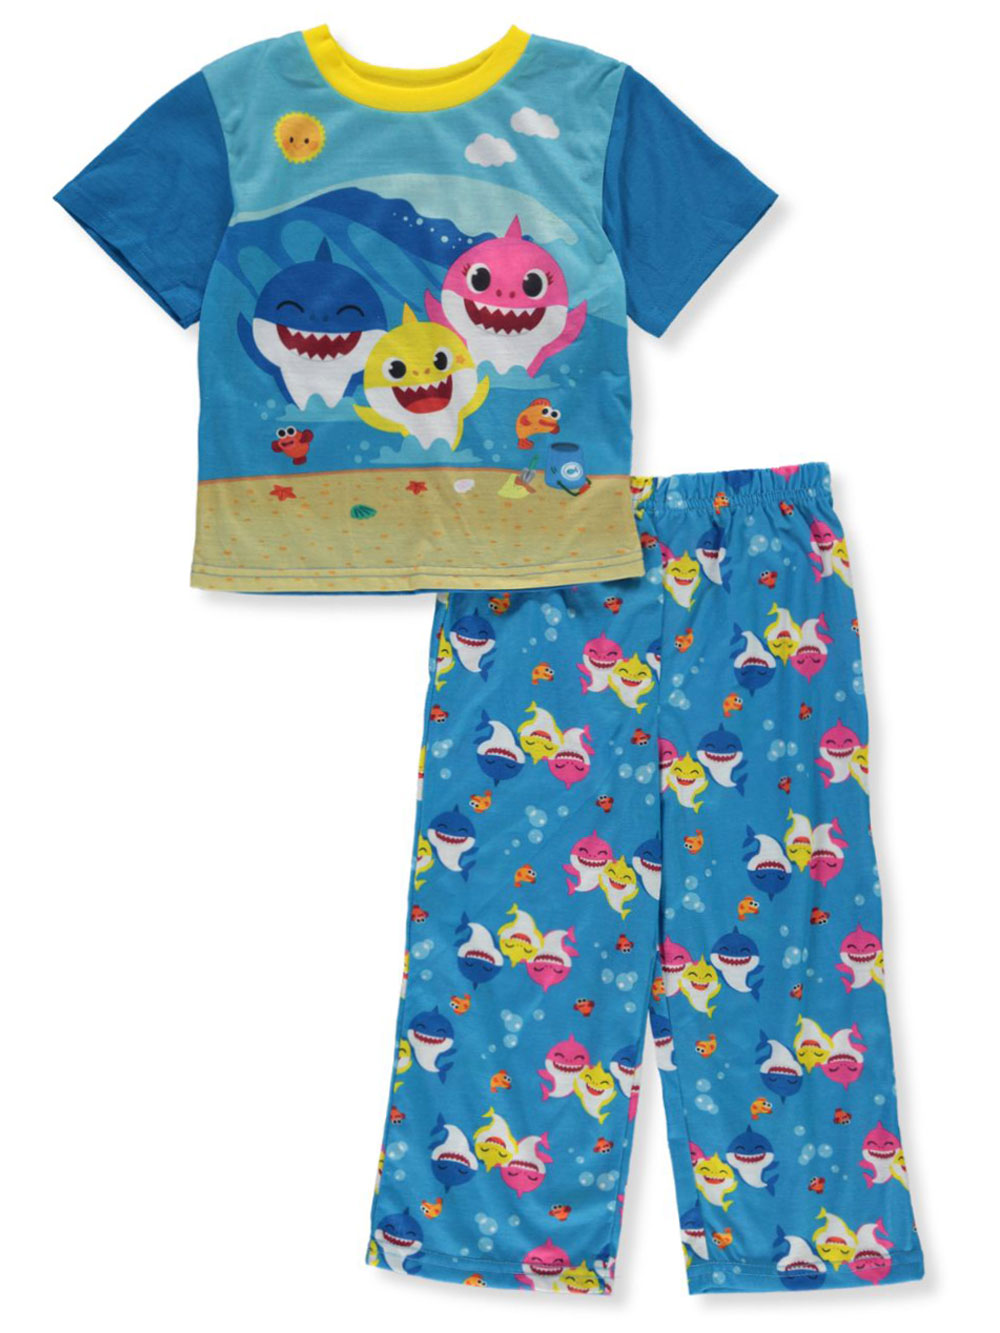 Baby Shark Pajamas